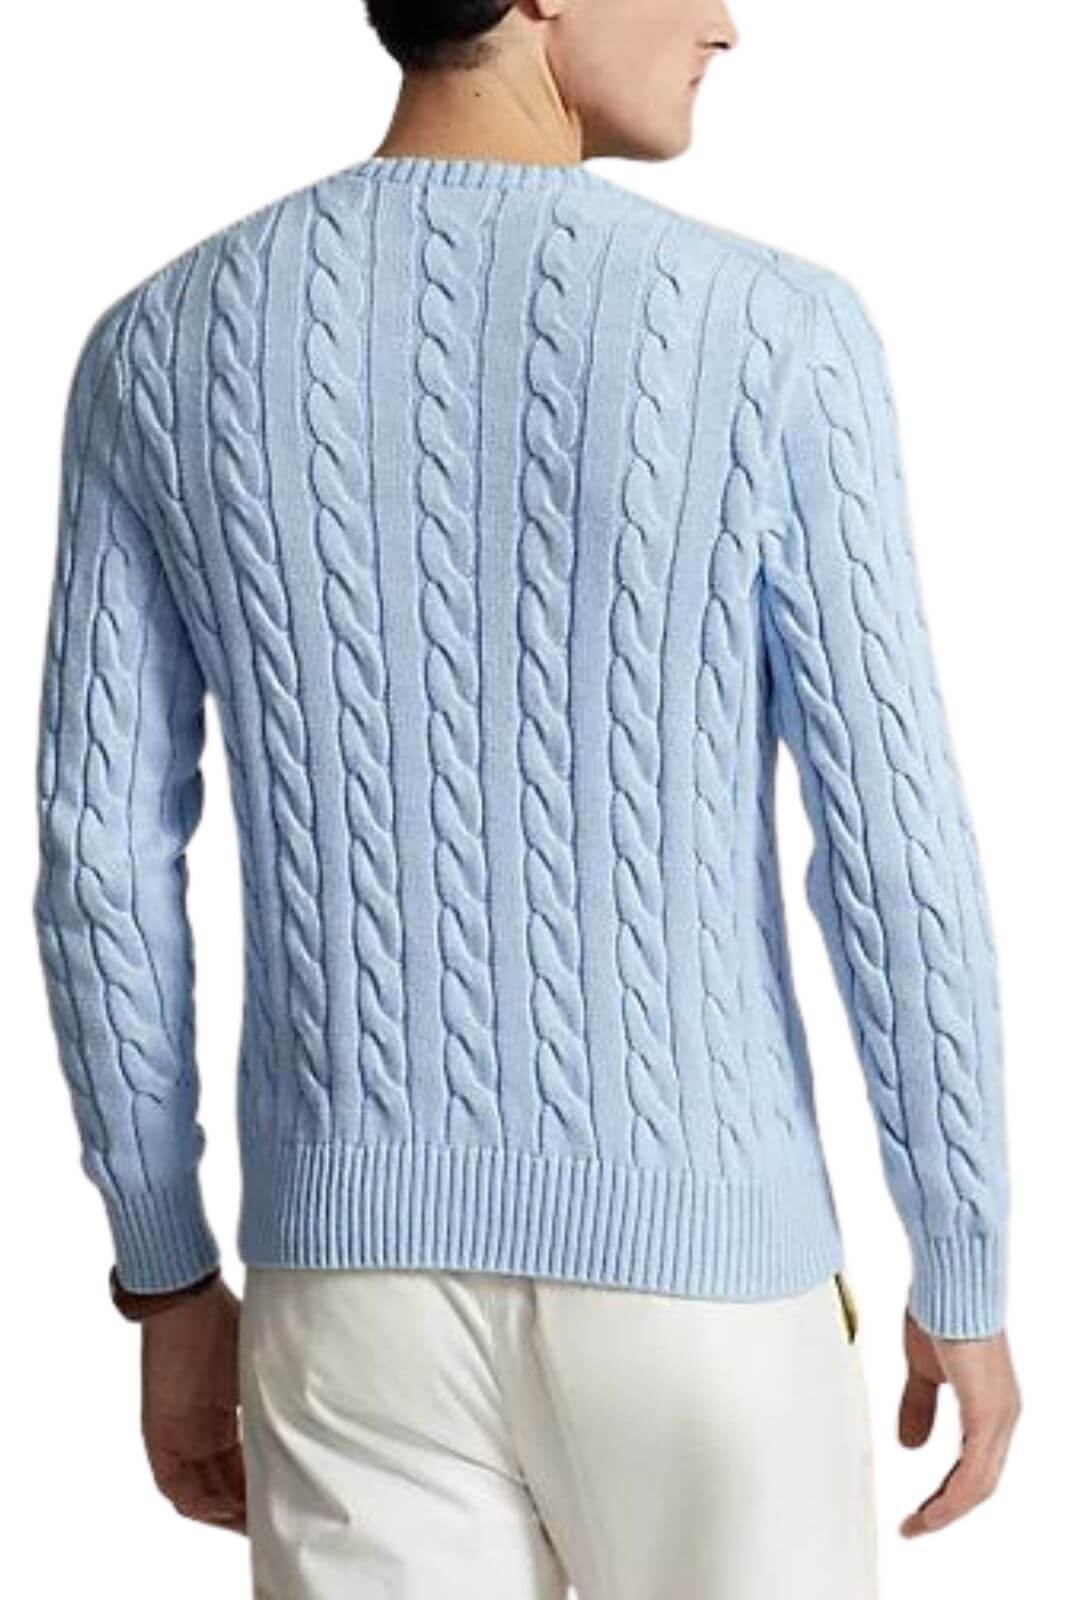 Polo Ralph Lauren maglia uomo a trecce in cotone